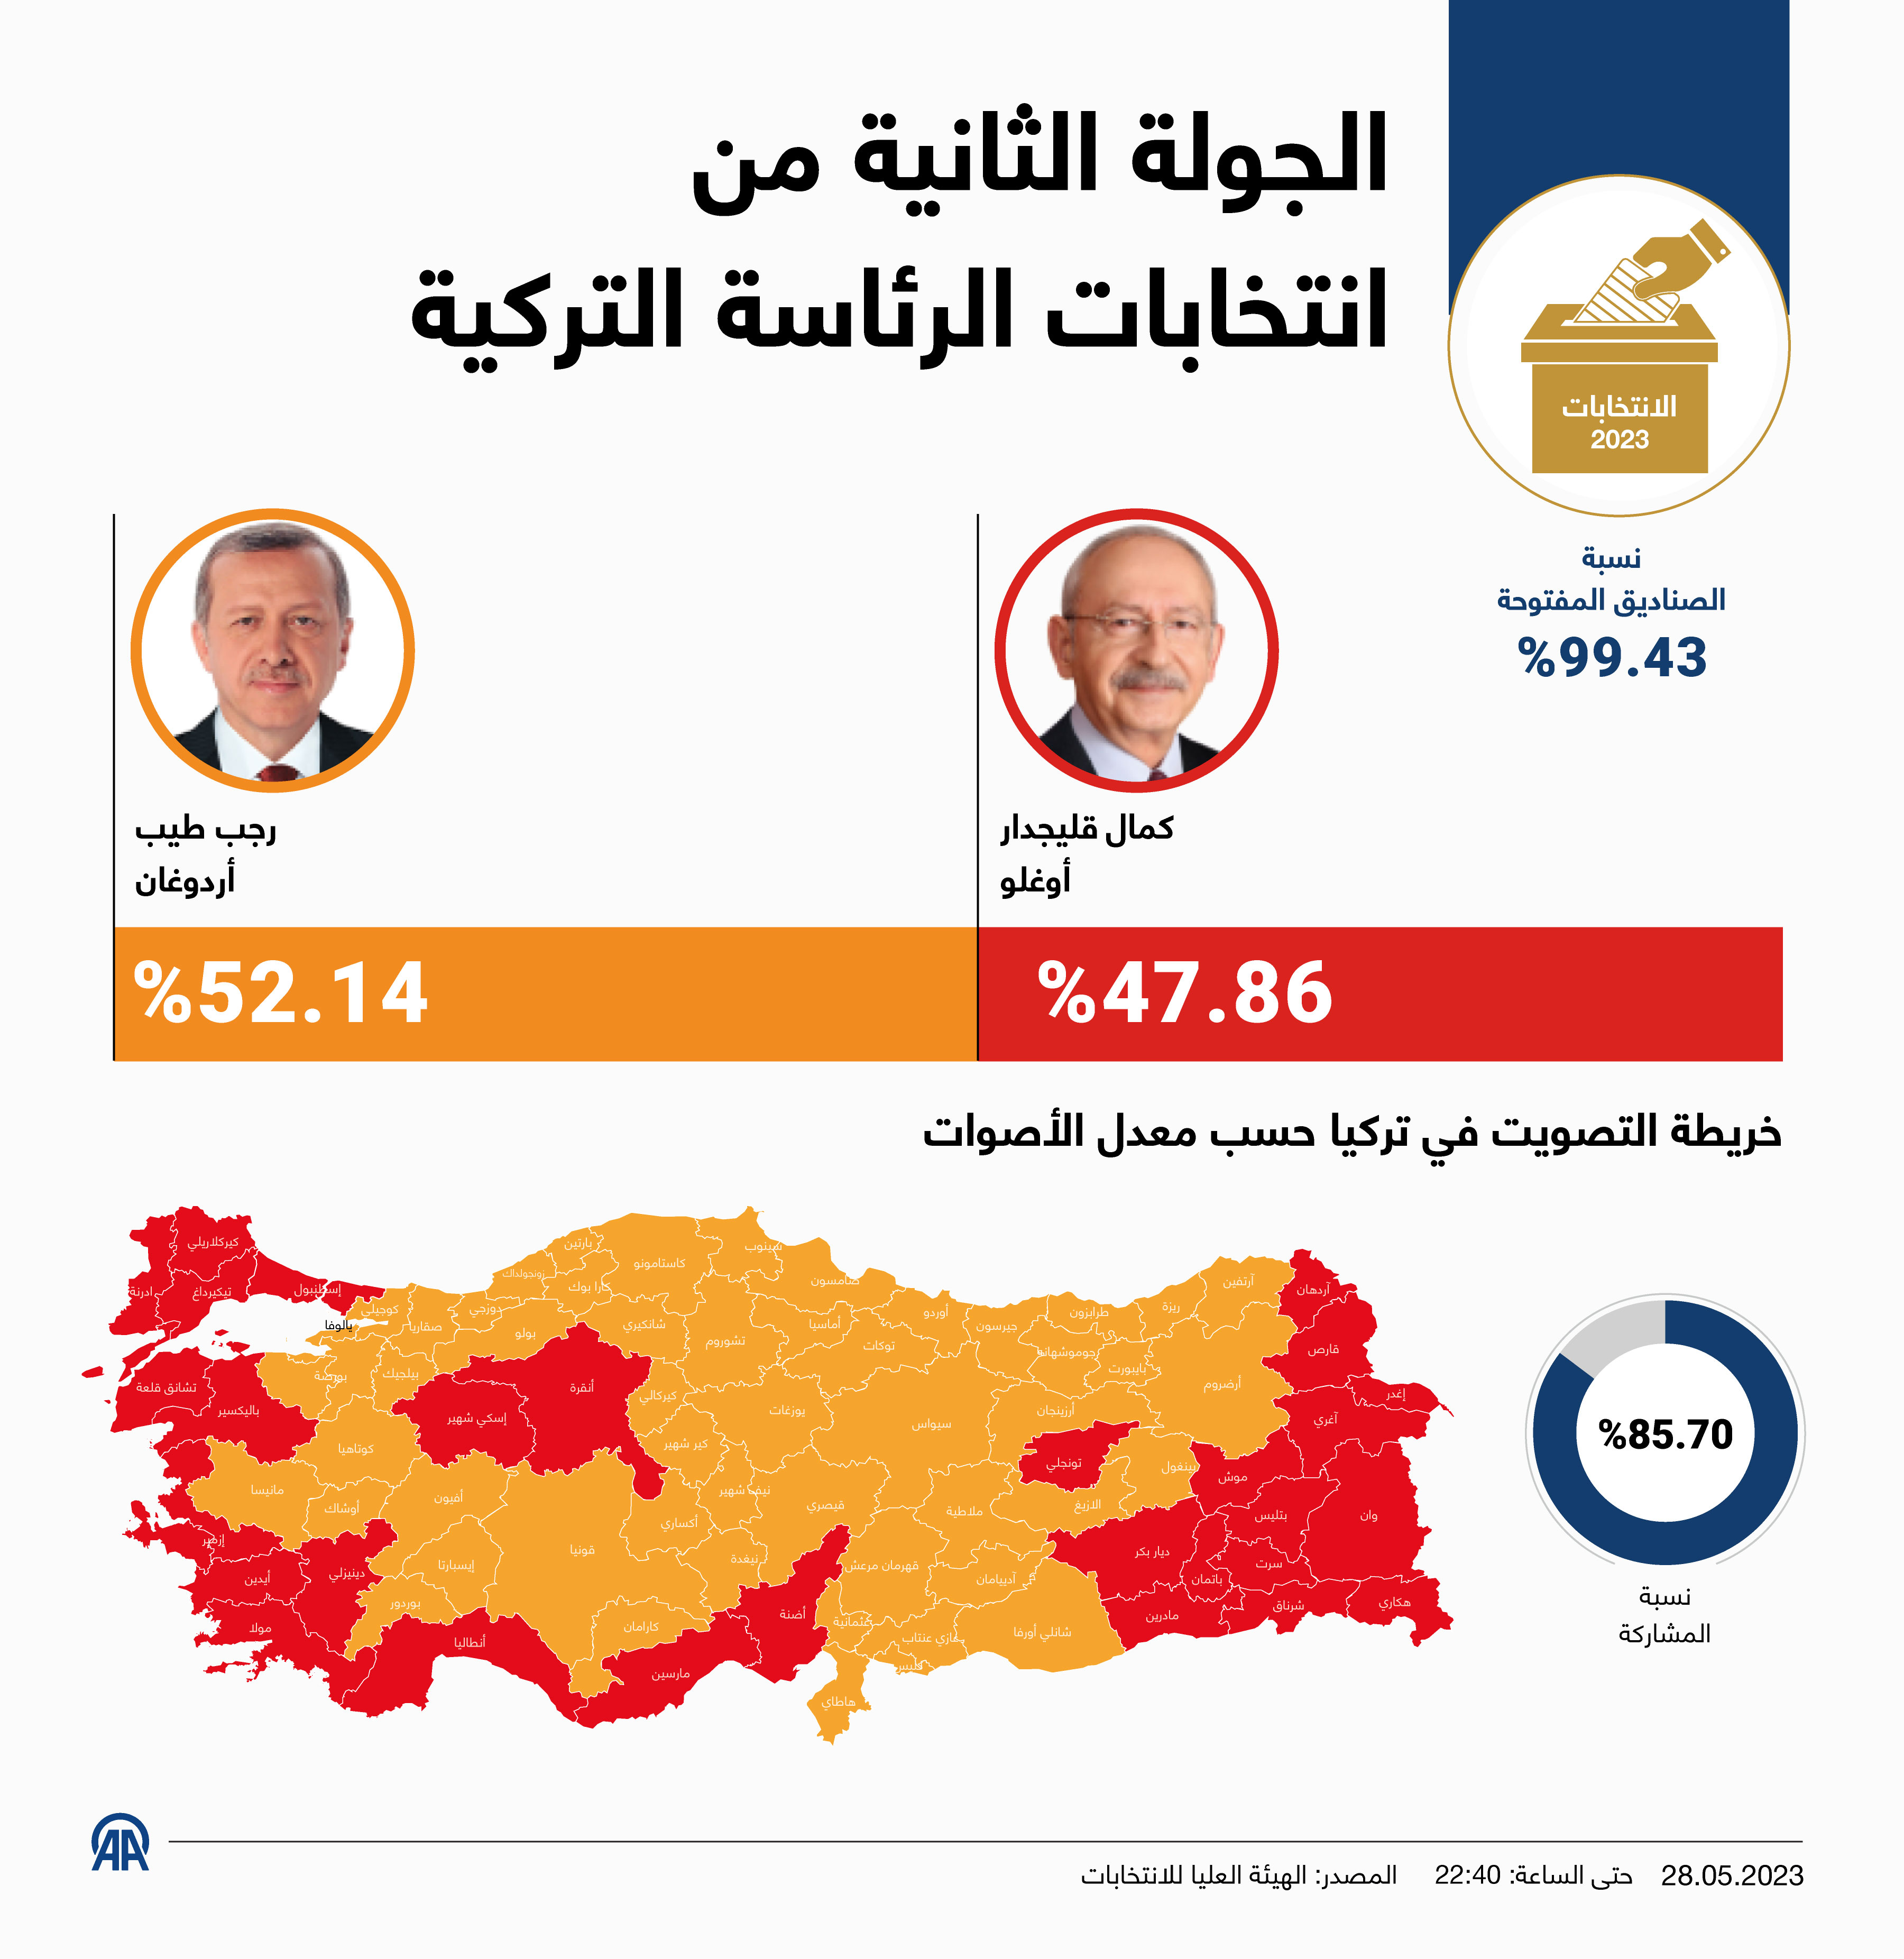 الجولة الثانية من انتخابات الرئاسة التركية